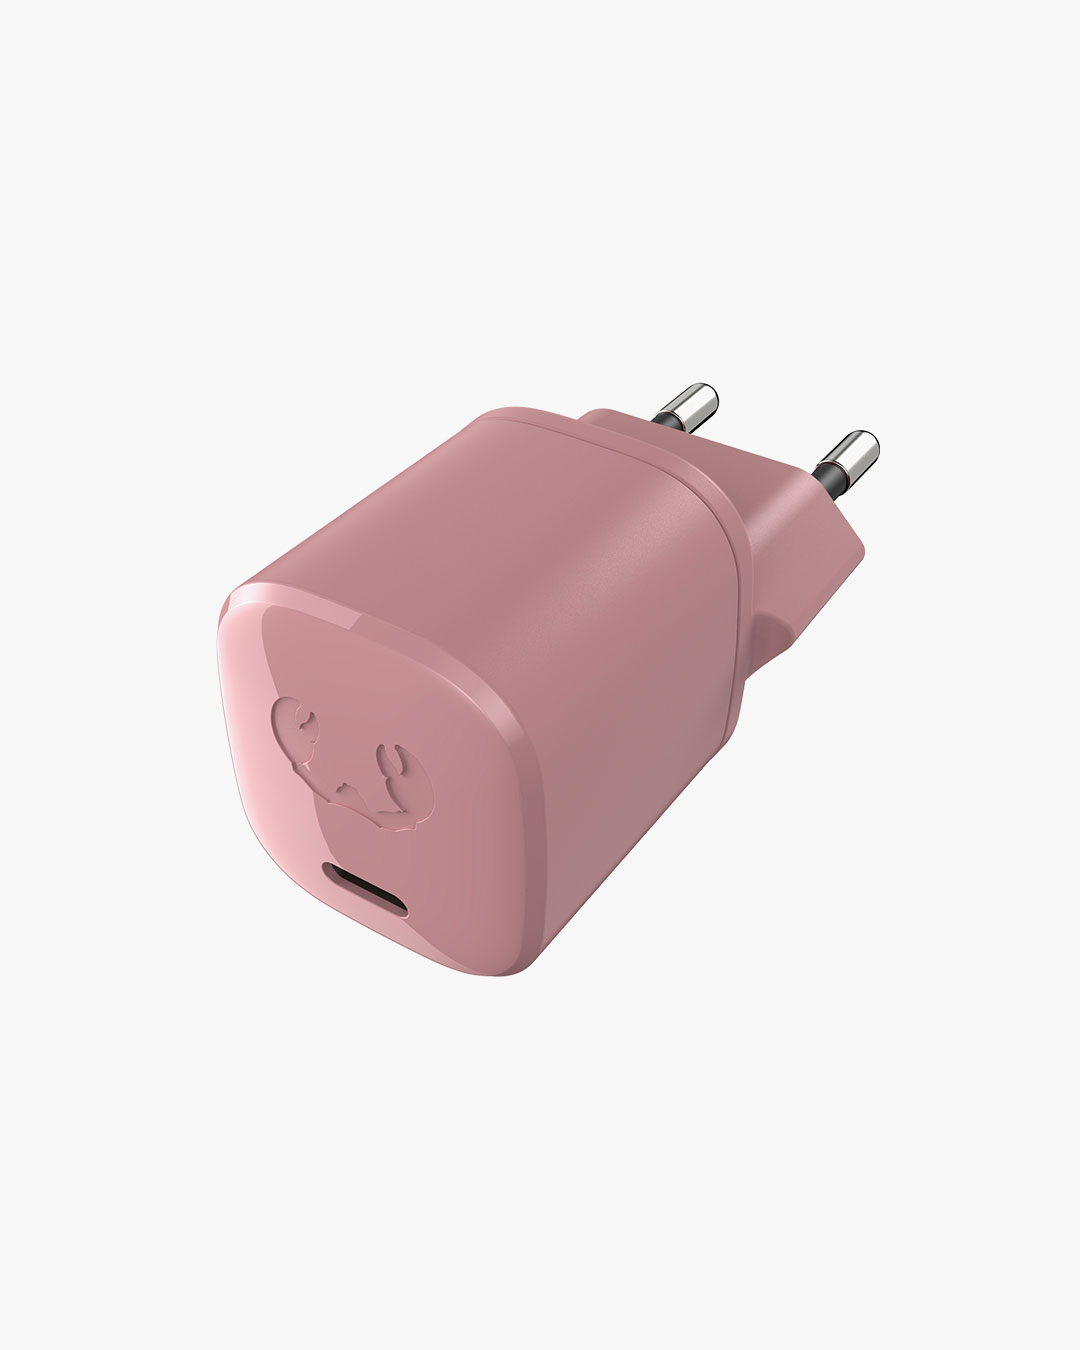 Fresh 'n Rebel - USB-C Mini Charger 20W - Dusty Pink